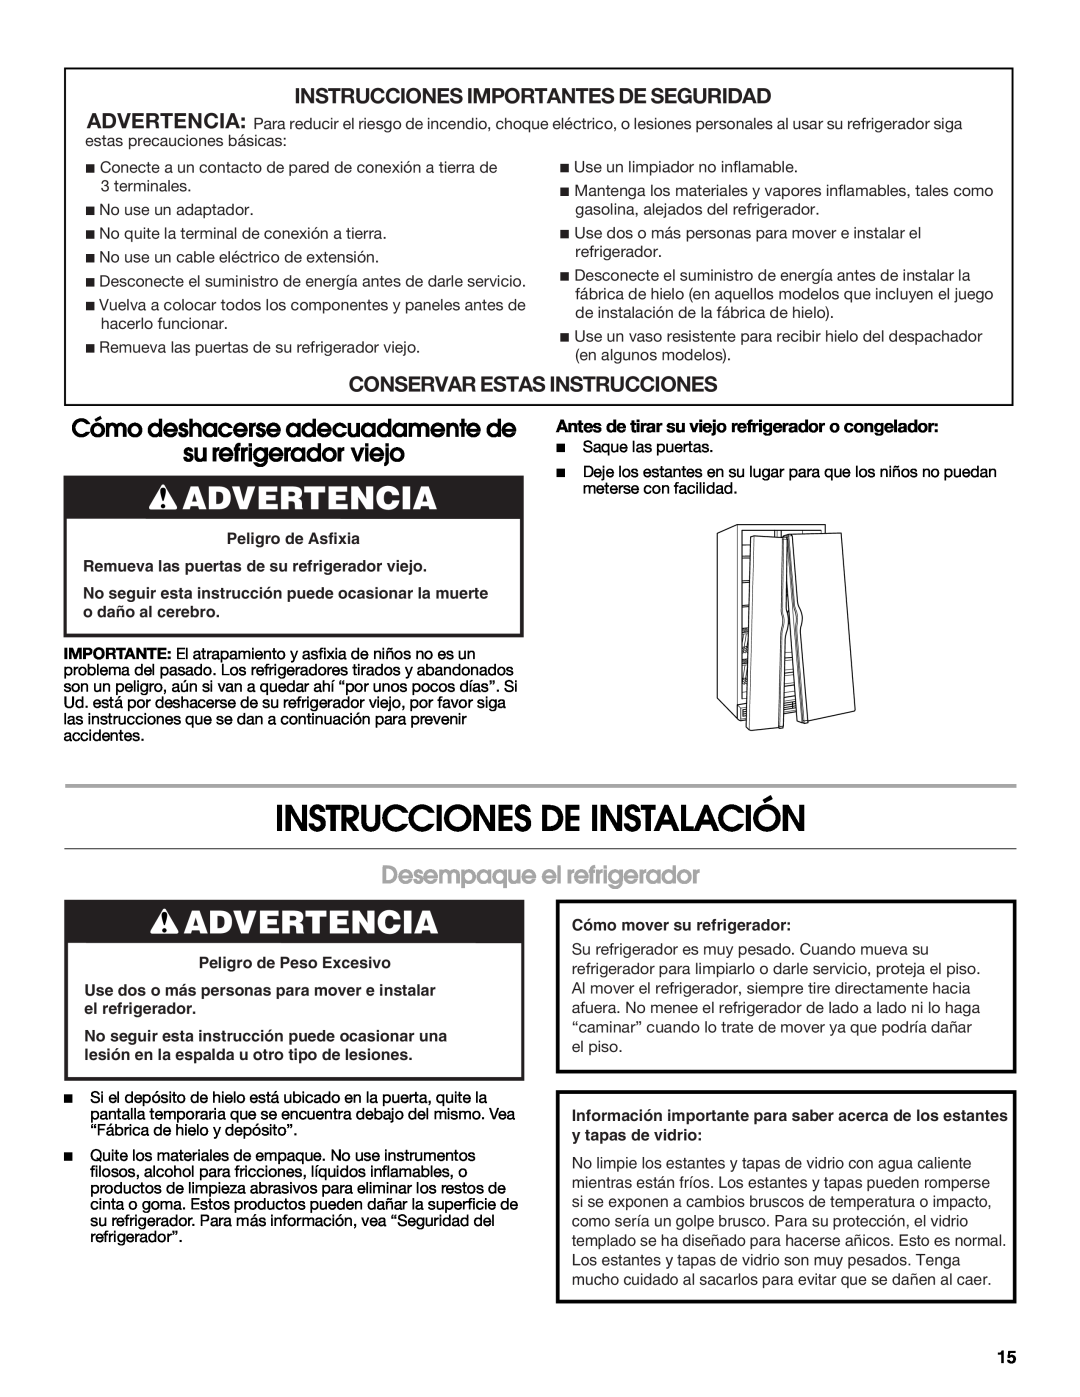 Estate 2318600 warranty Instrucciones De Instalación, Advertencia, Cómo deshacerse adecuadamente de, su refrigerador viejo 